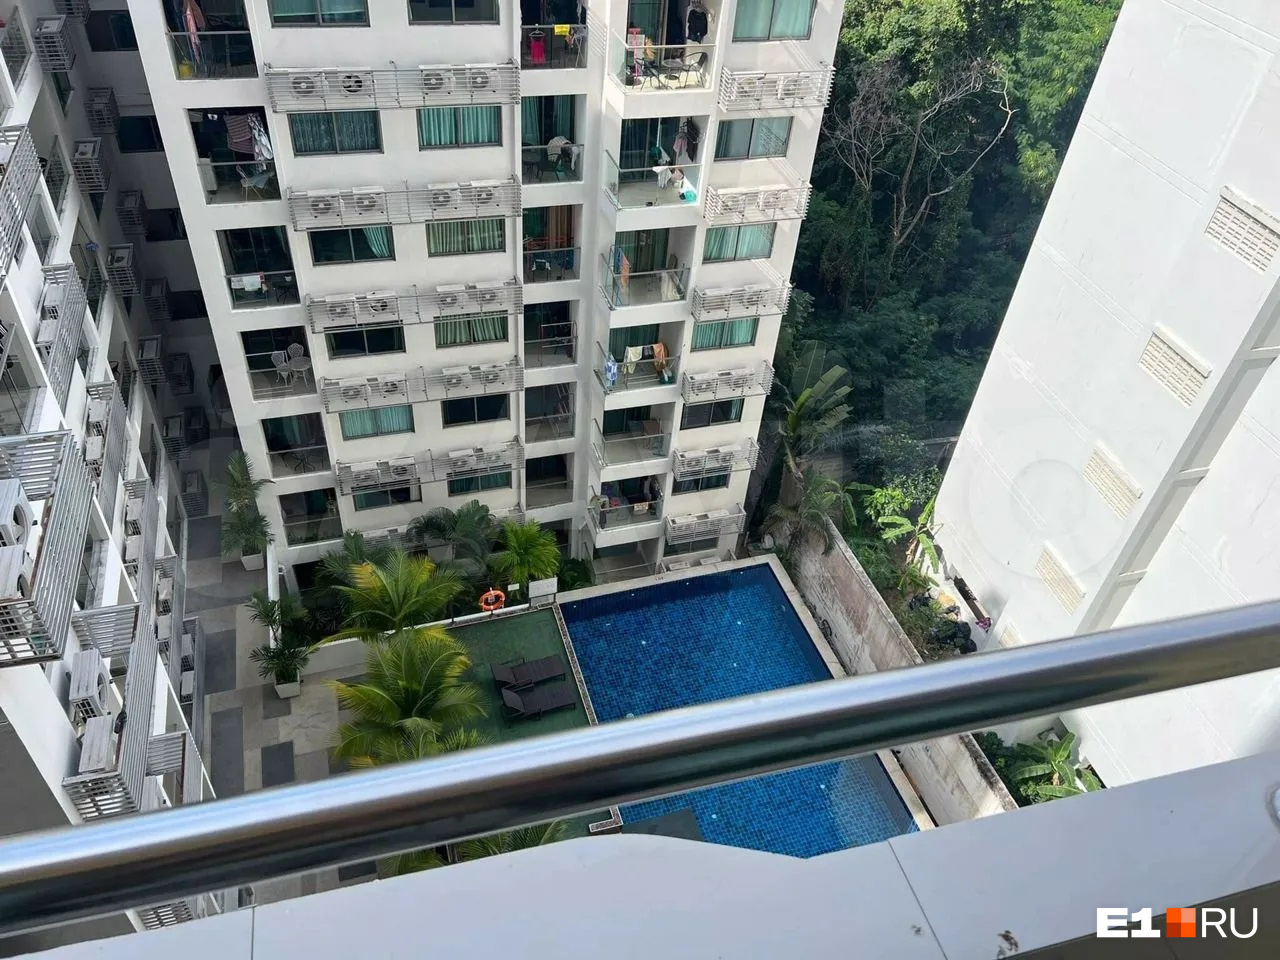 В таиландской квартире есть двор с бассейном и консьерж